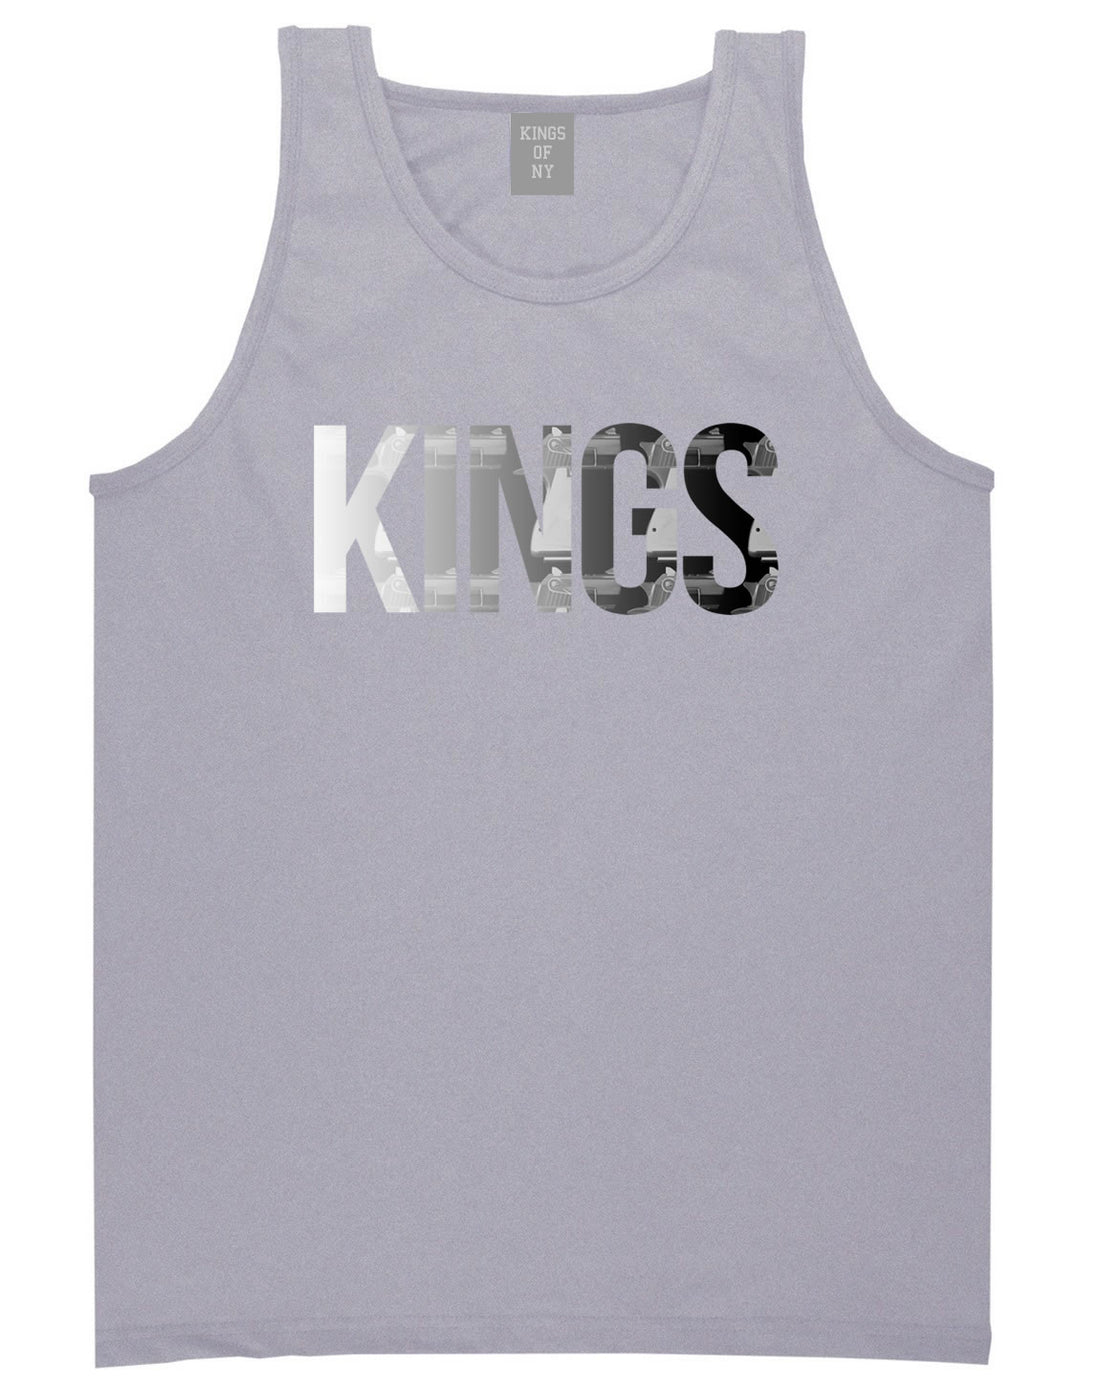 KINGS Gun Pattern Print Tank Top in Grey by Kings Of NY